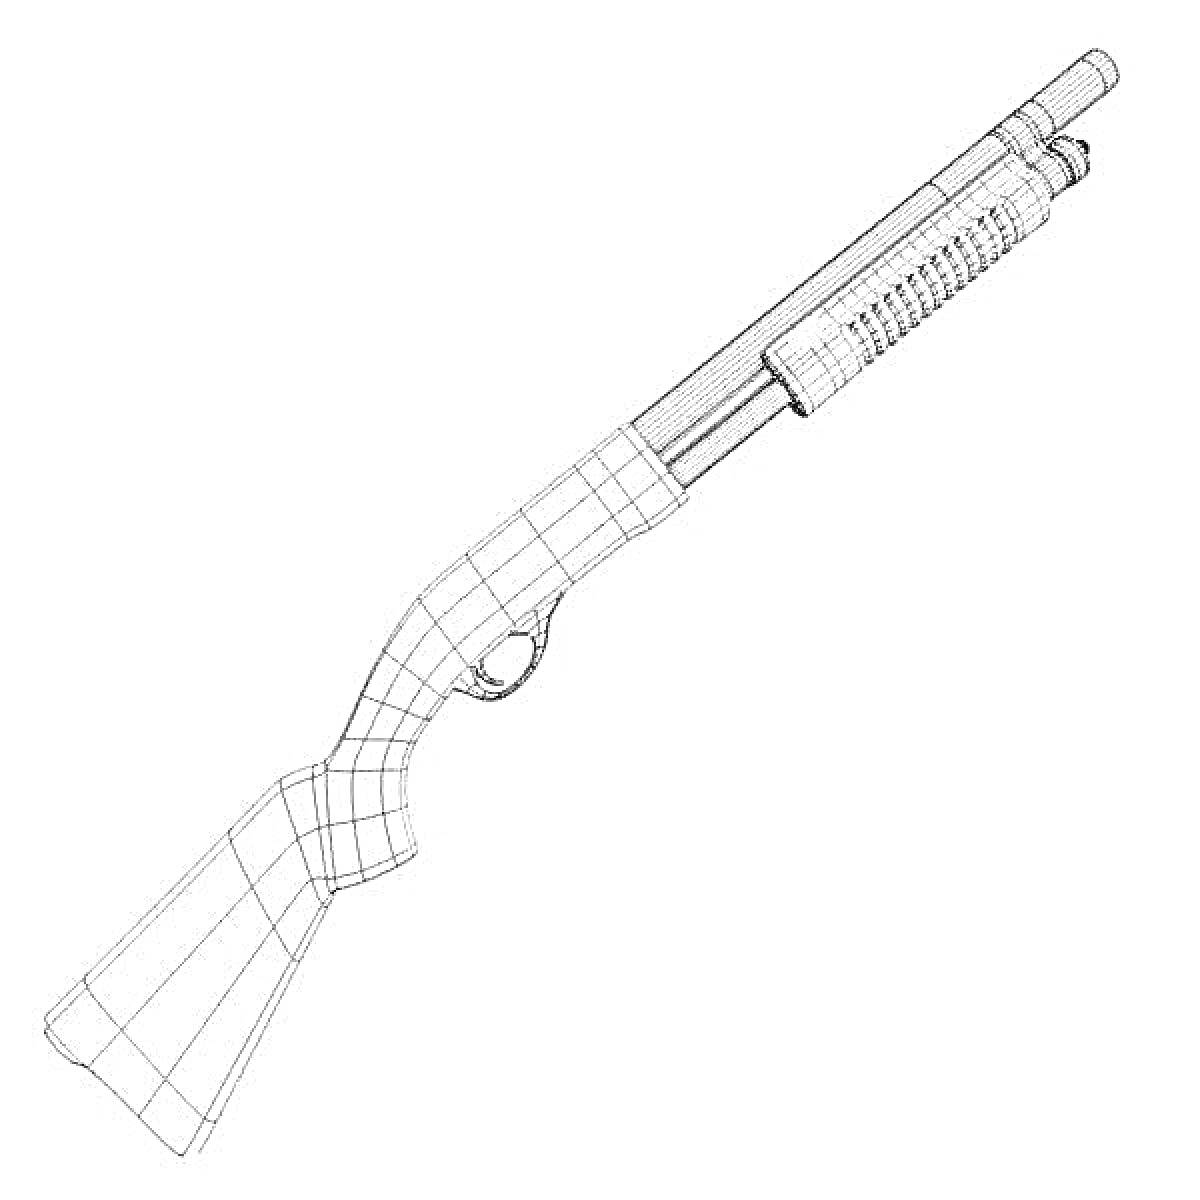 Раскраска Раскраска с изображением ружья с прикладом и цевьем со складчатым рисунком